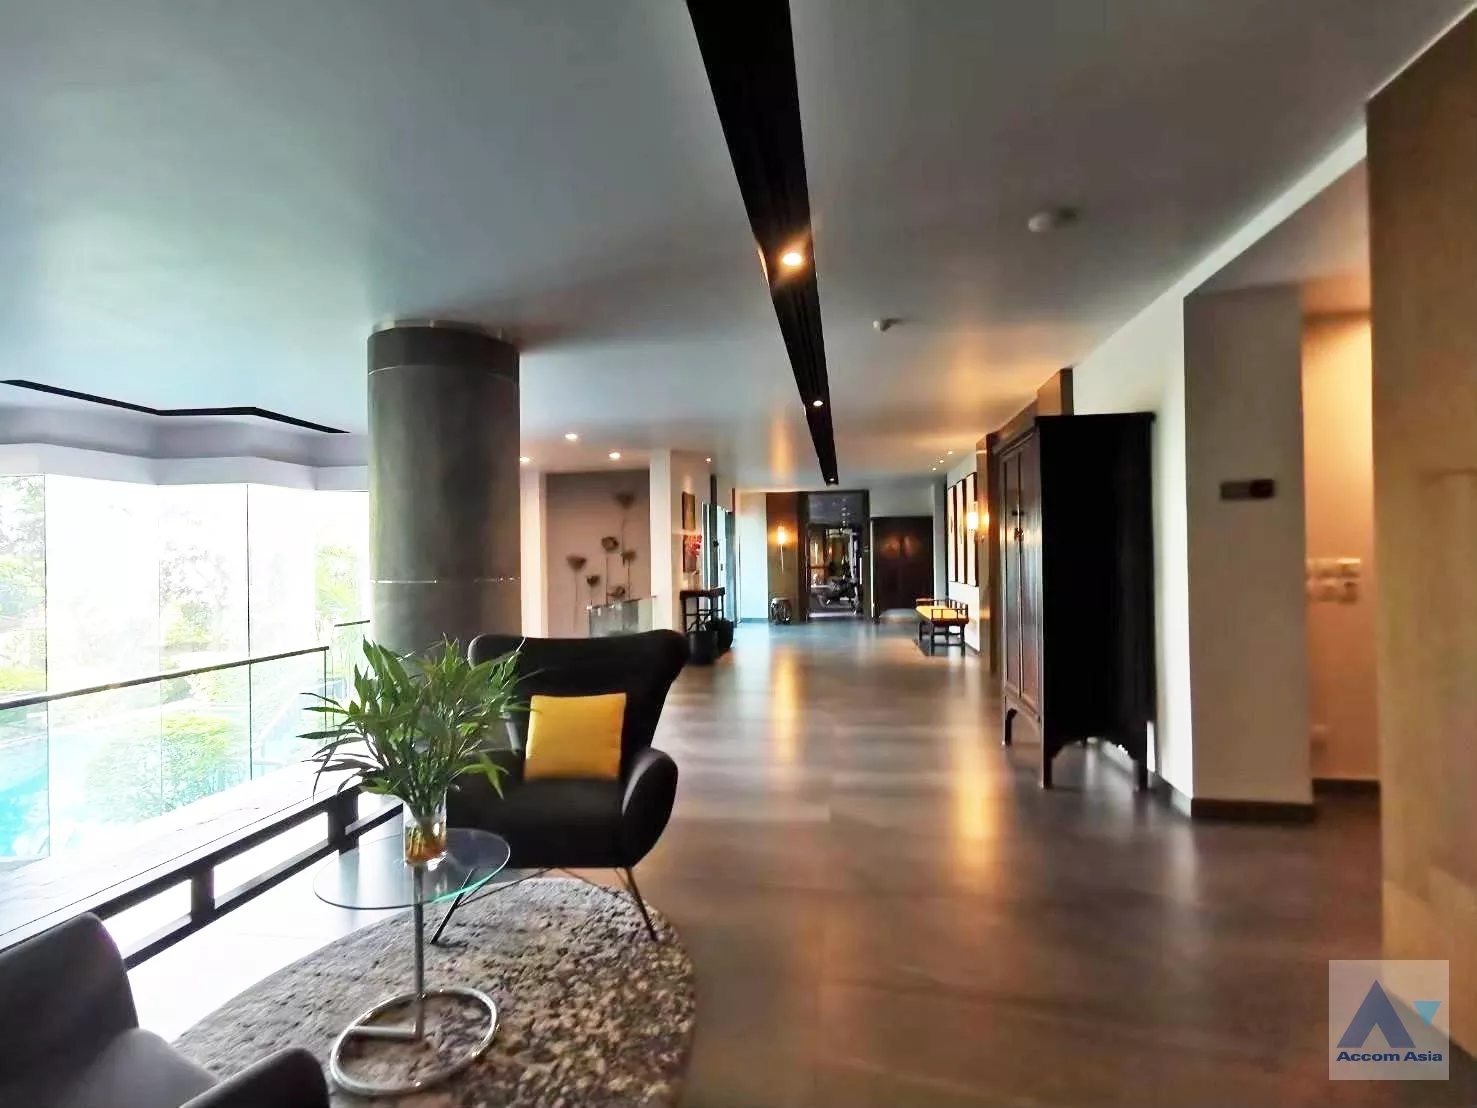  3 The Contemporary Living - Apartment - Nang Linchi - Bangkok / Accomasia